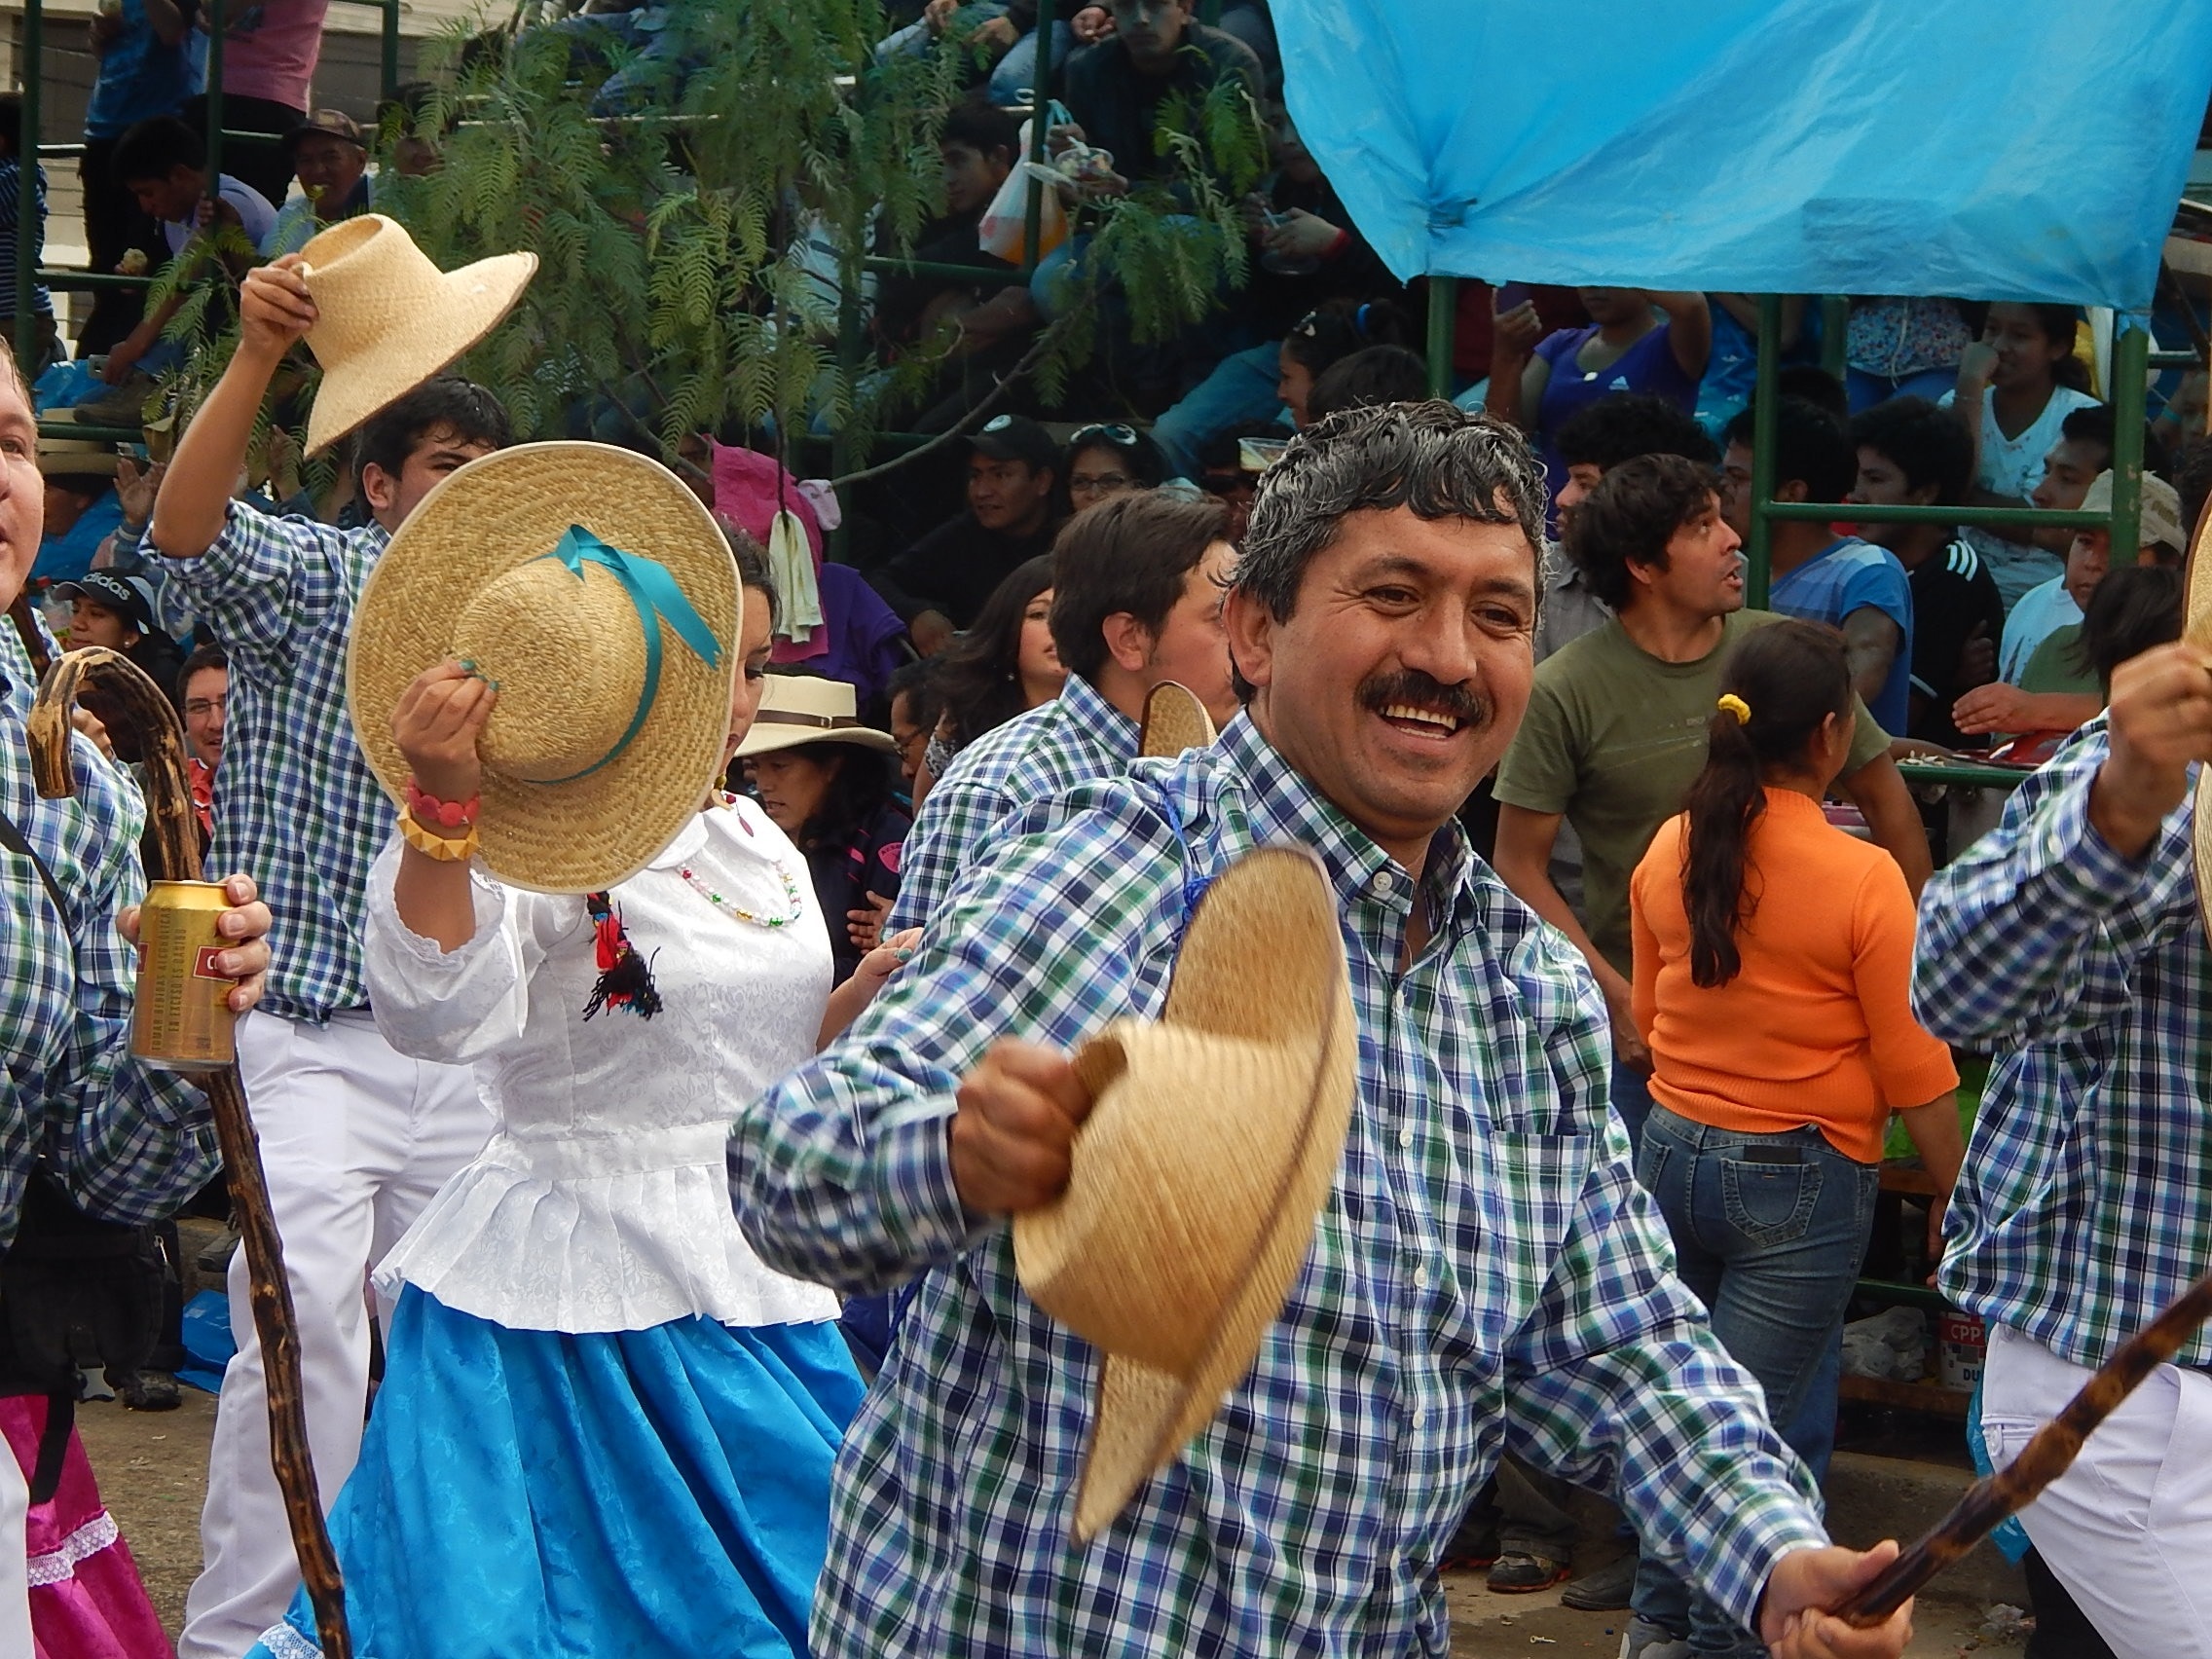 Cajamarca, Carnival, Hat, Men, Peru, togetherness, celebration